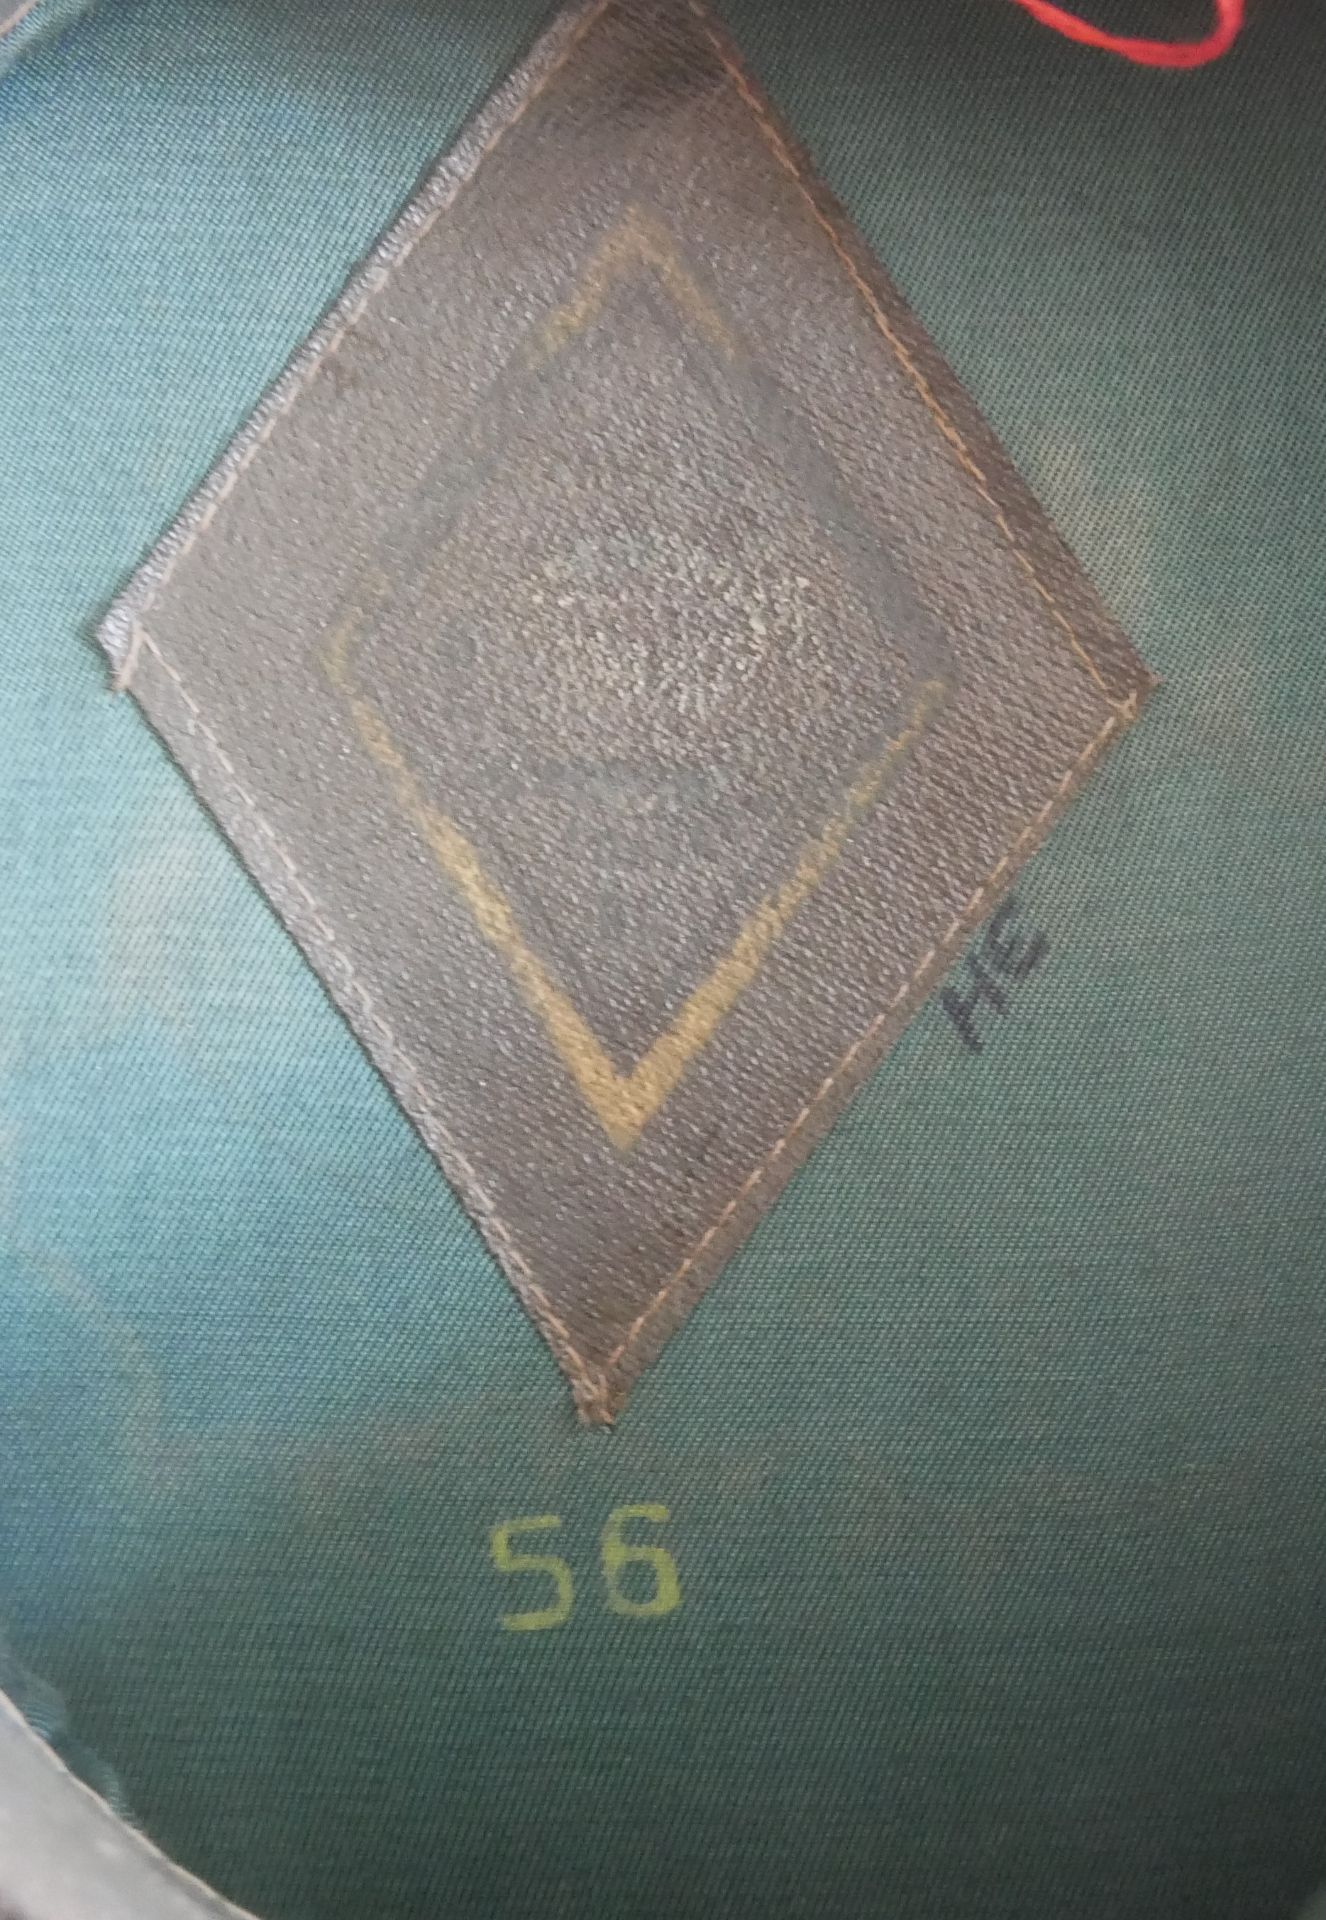 Aus Sammelauflösung! Uniformmütze / Schirmmütze UDSSR CCCP Armee Offizier. Größe 56, in blau / - Bild 3 aus 3